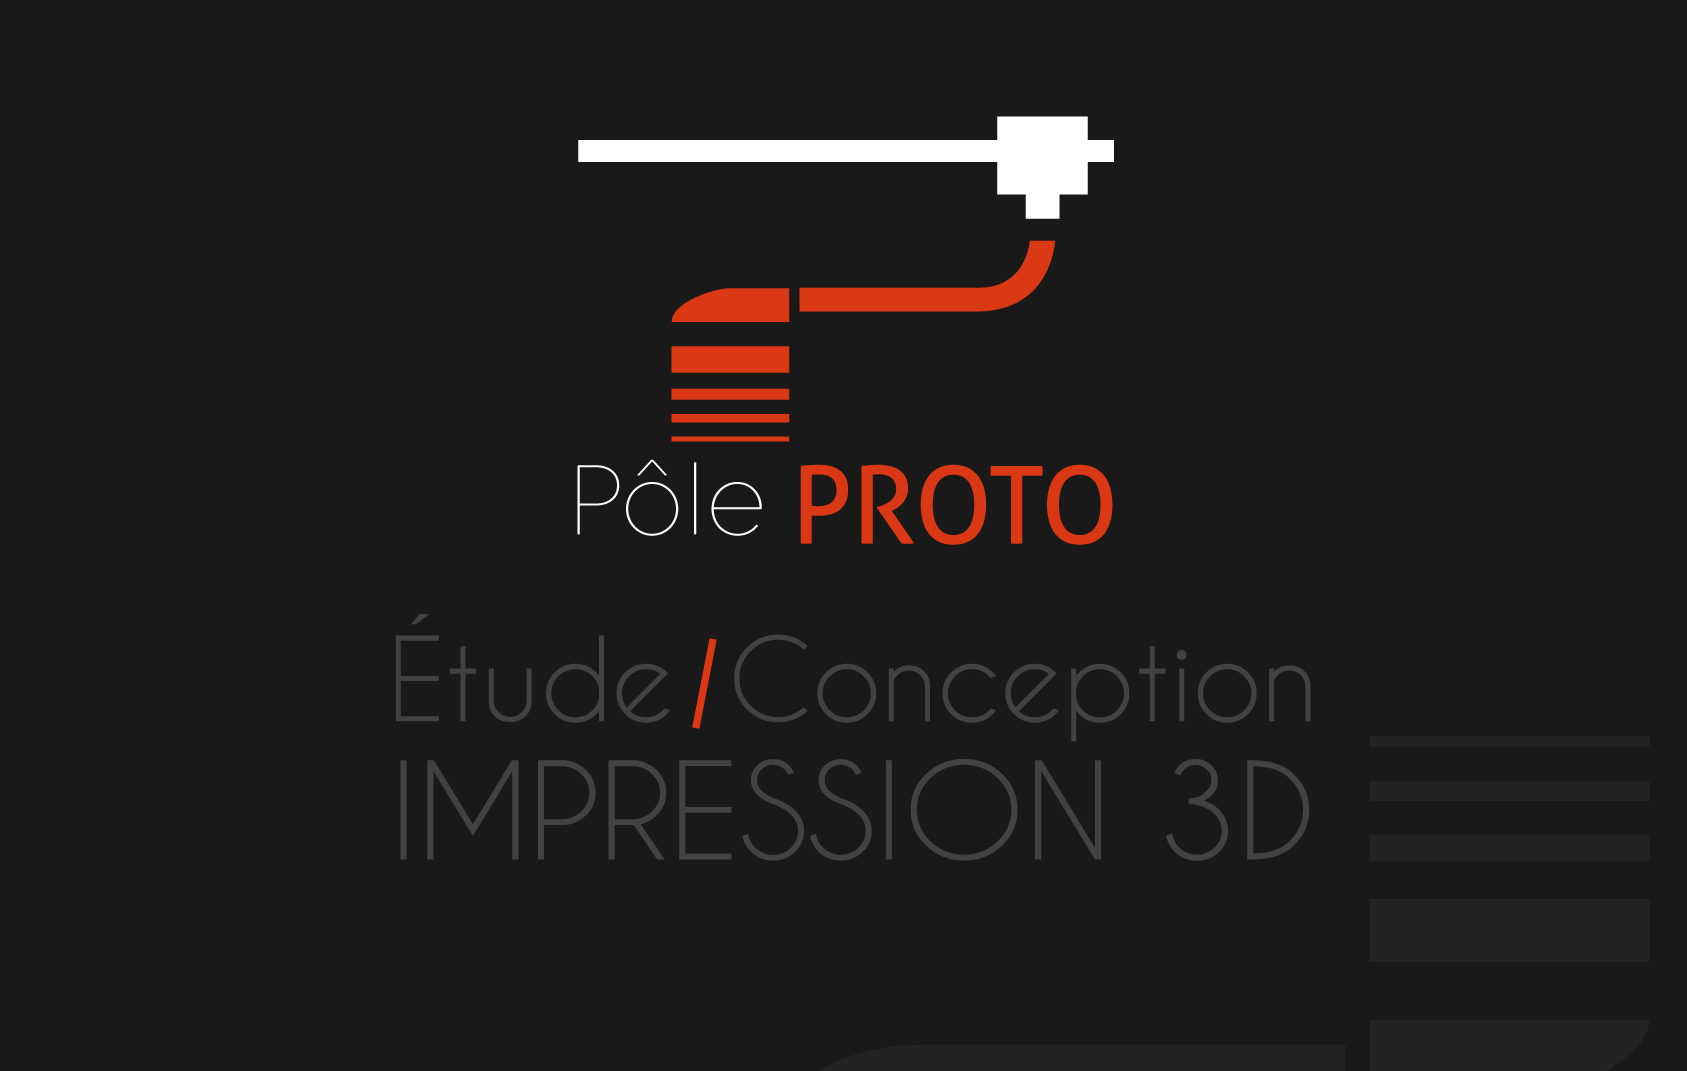 Pole proto l'impression 3D - Ressources matérielles : le scan 3D